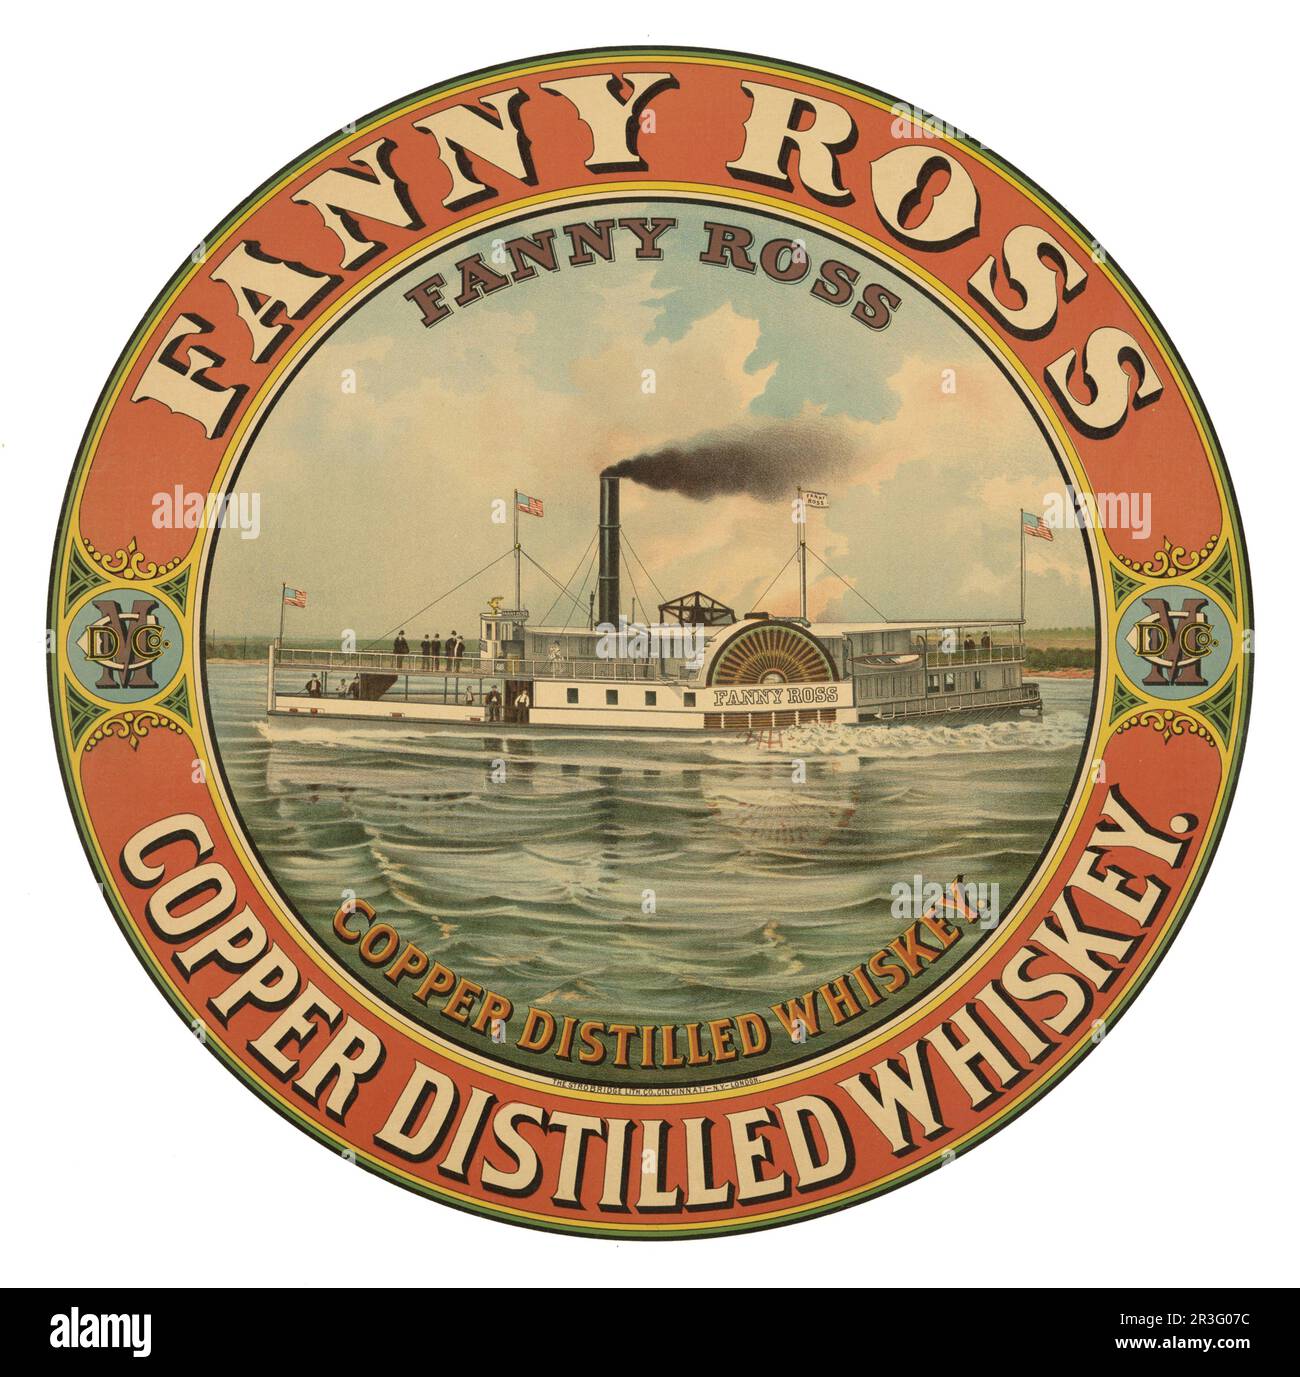 Publicité vintage pour Fanny Ross cuivre distillé whisky. Banque D'Images